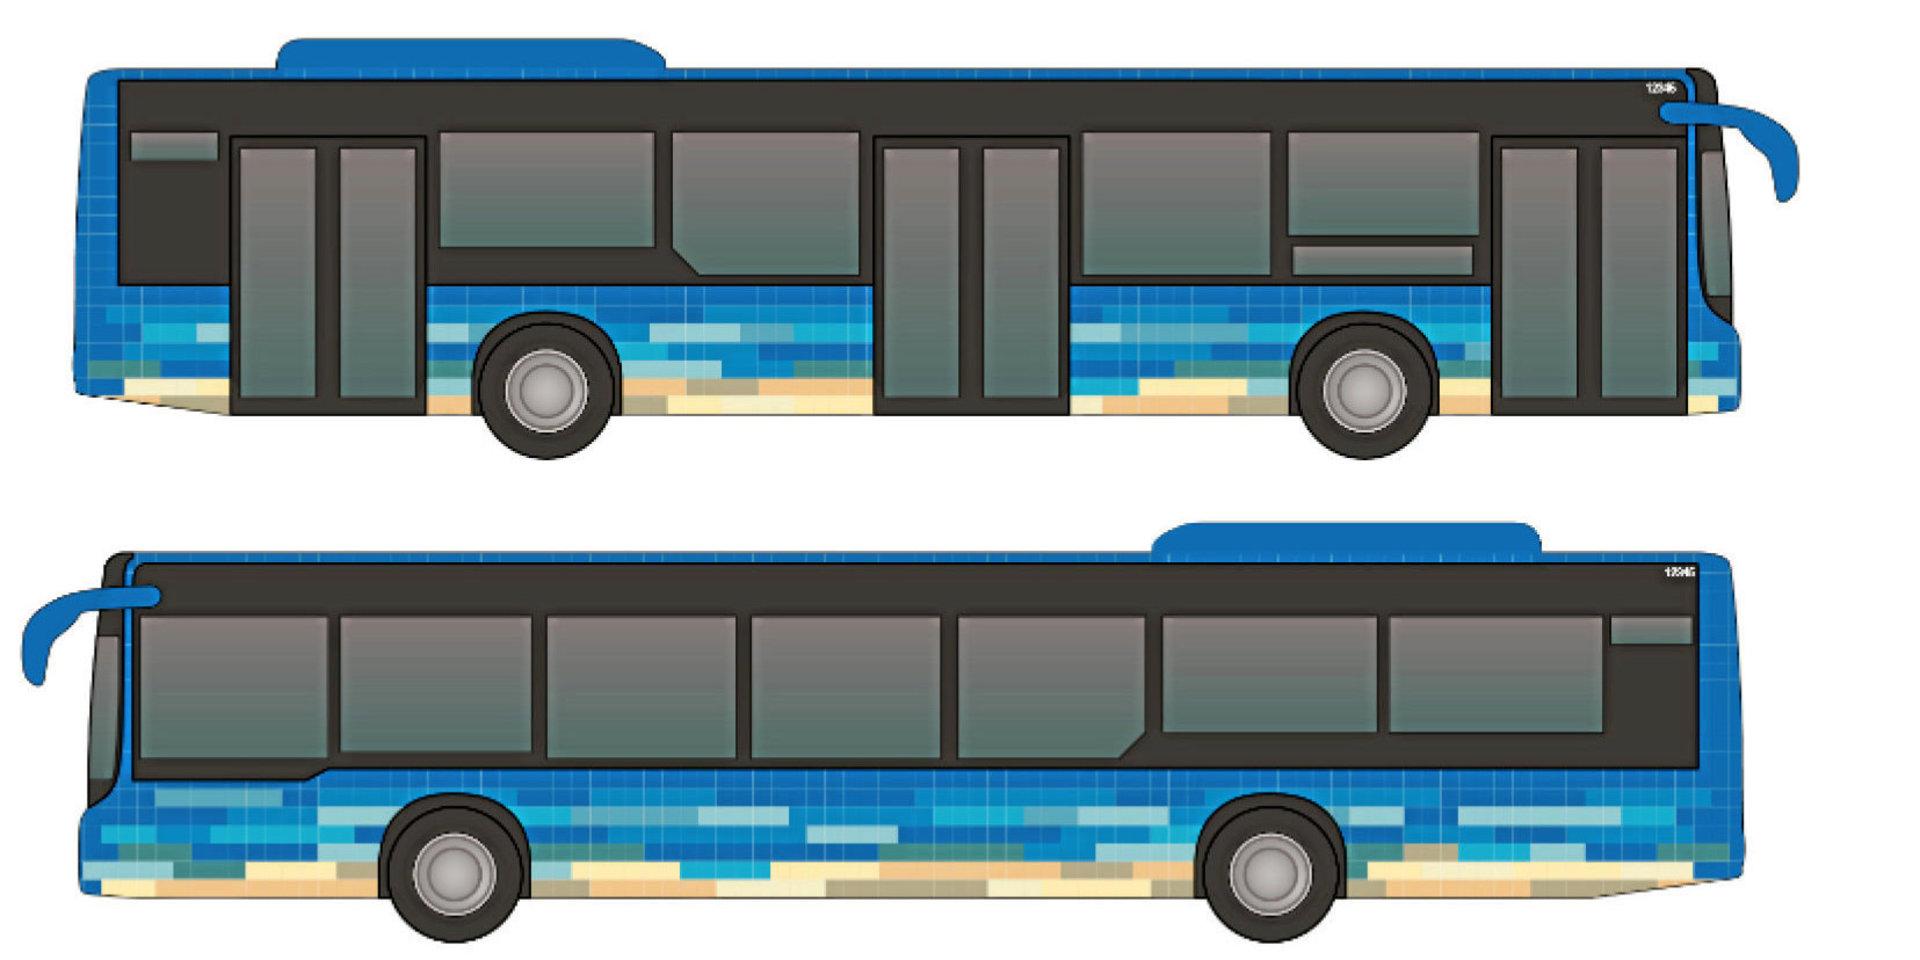 Så här är det tänkt att de nya bussarna ska se ut. Den himmelsblå färgen och dekoren med sandfärgade pixlar ska föra tankarna till den halländska kustlinjen.